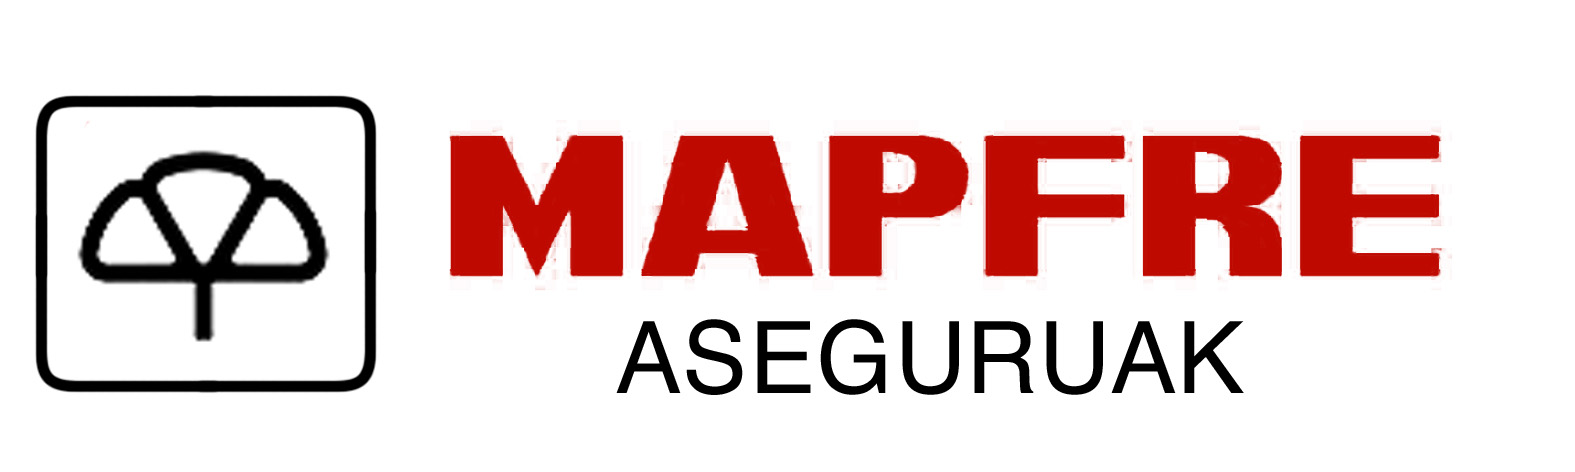 Mapfre Aseguruak